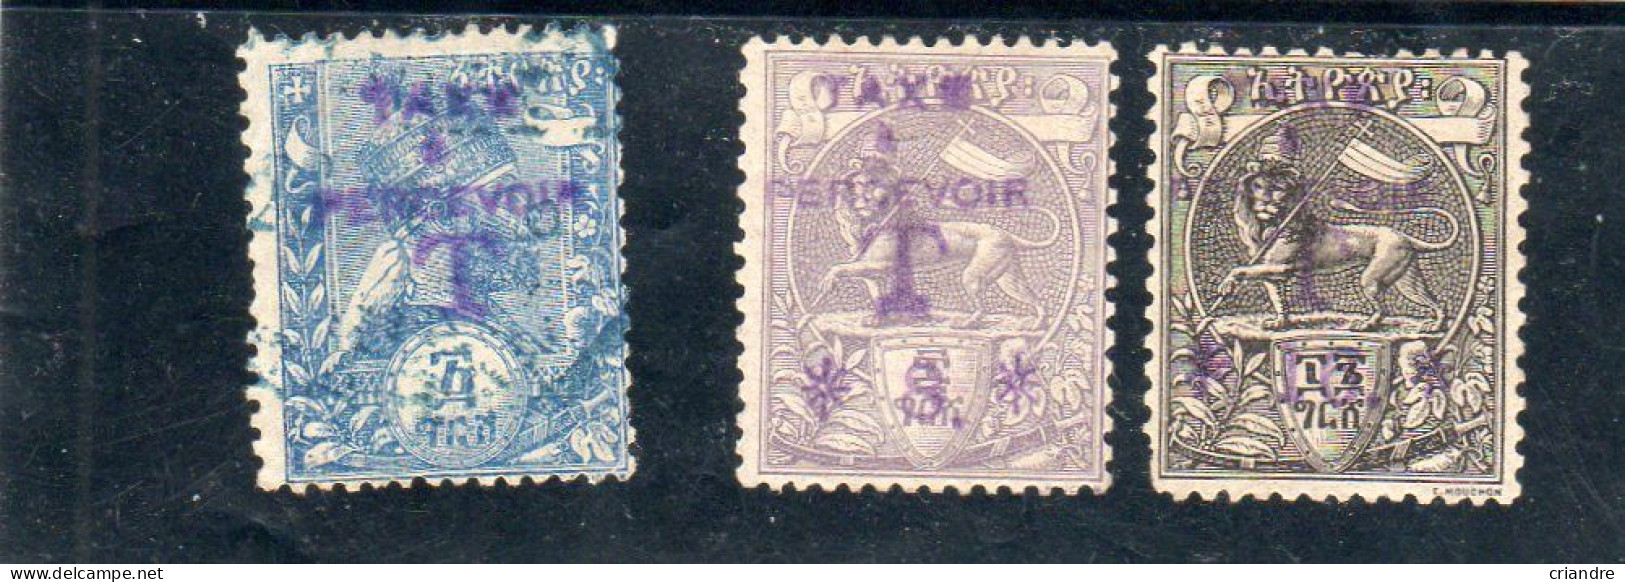 Ethiopie: Année 1905, Lot De 3 Valeurs Y&T Taxe N° 17,27,28 ( Sans Gomme) - Ethiopie